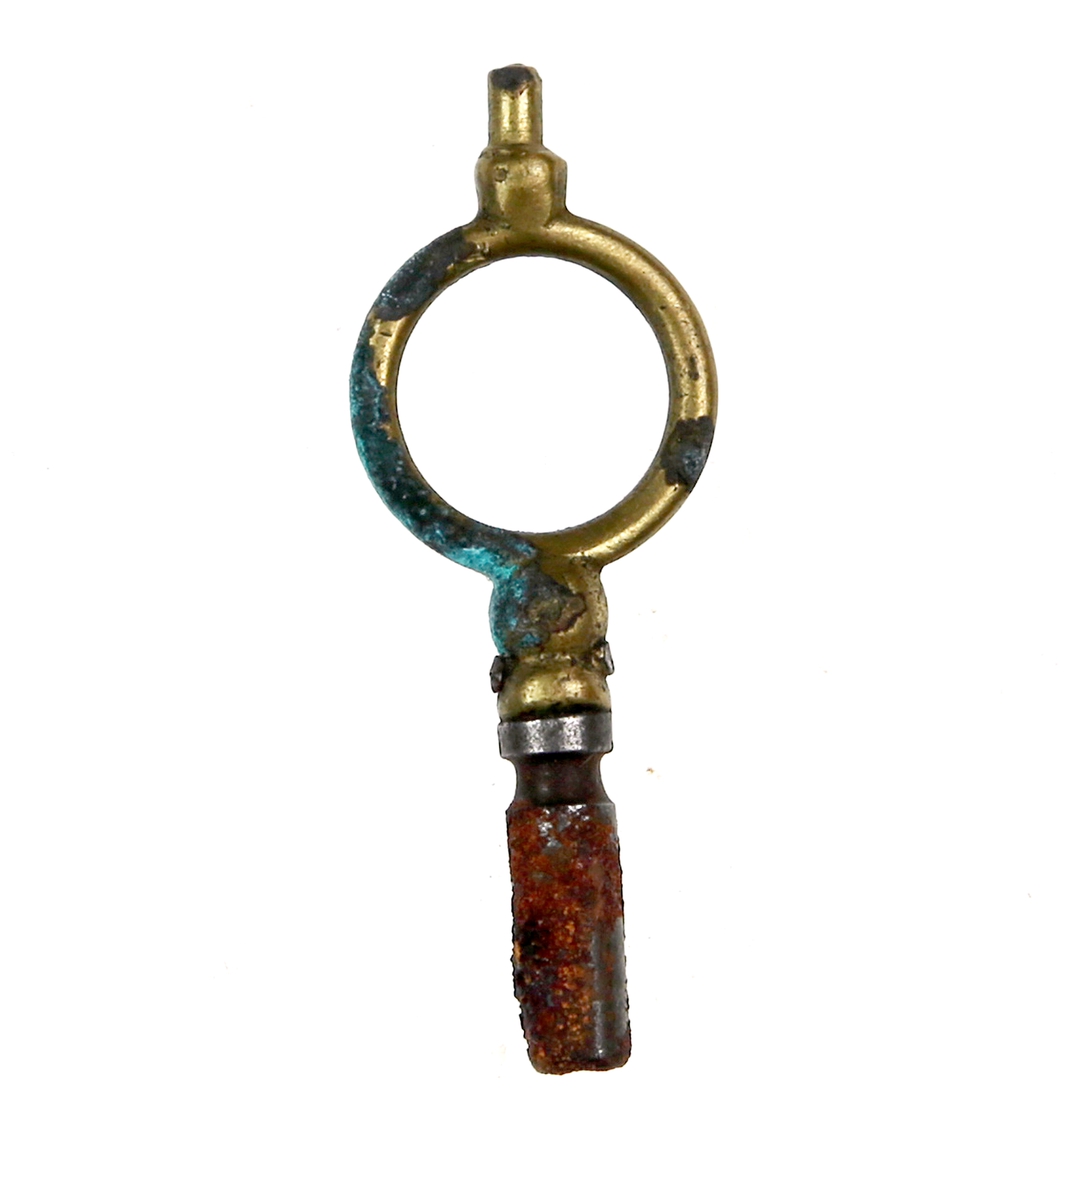 Nøkkel støpt i messing  og jern, og utformet som en ring